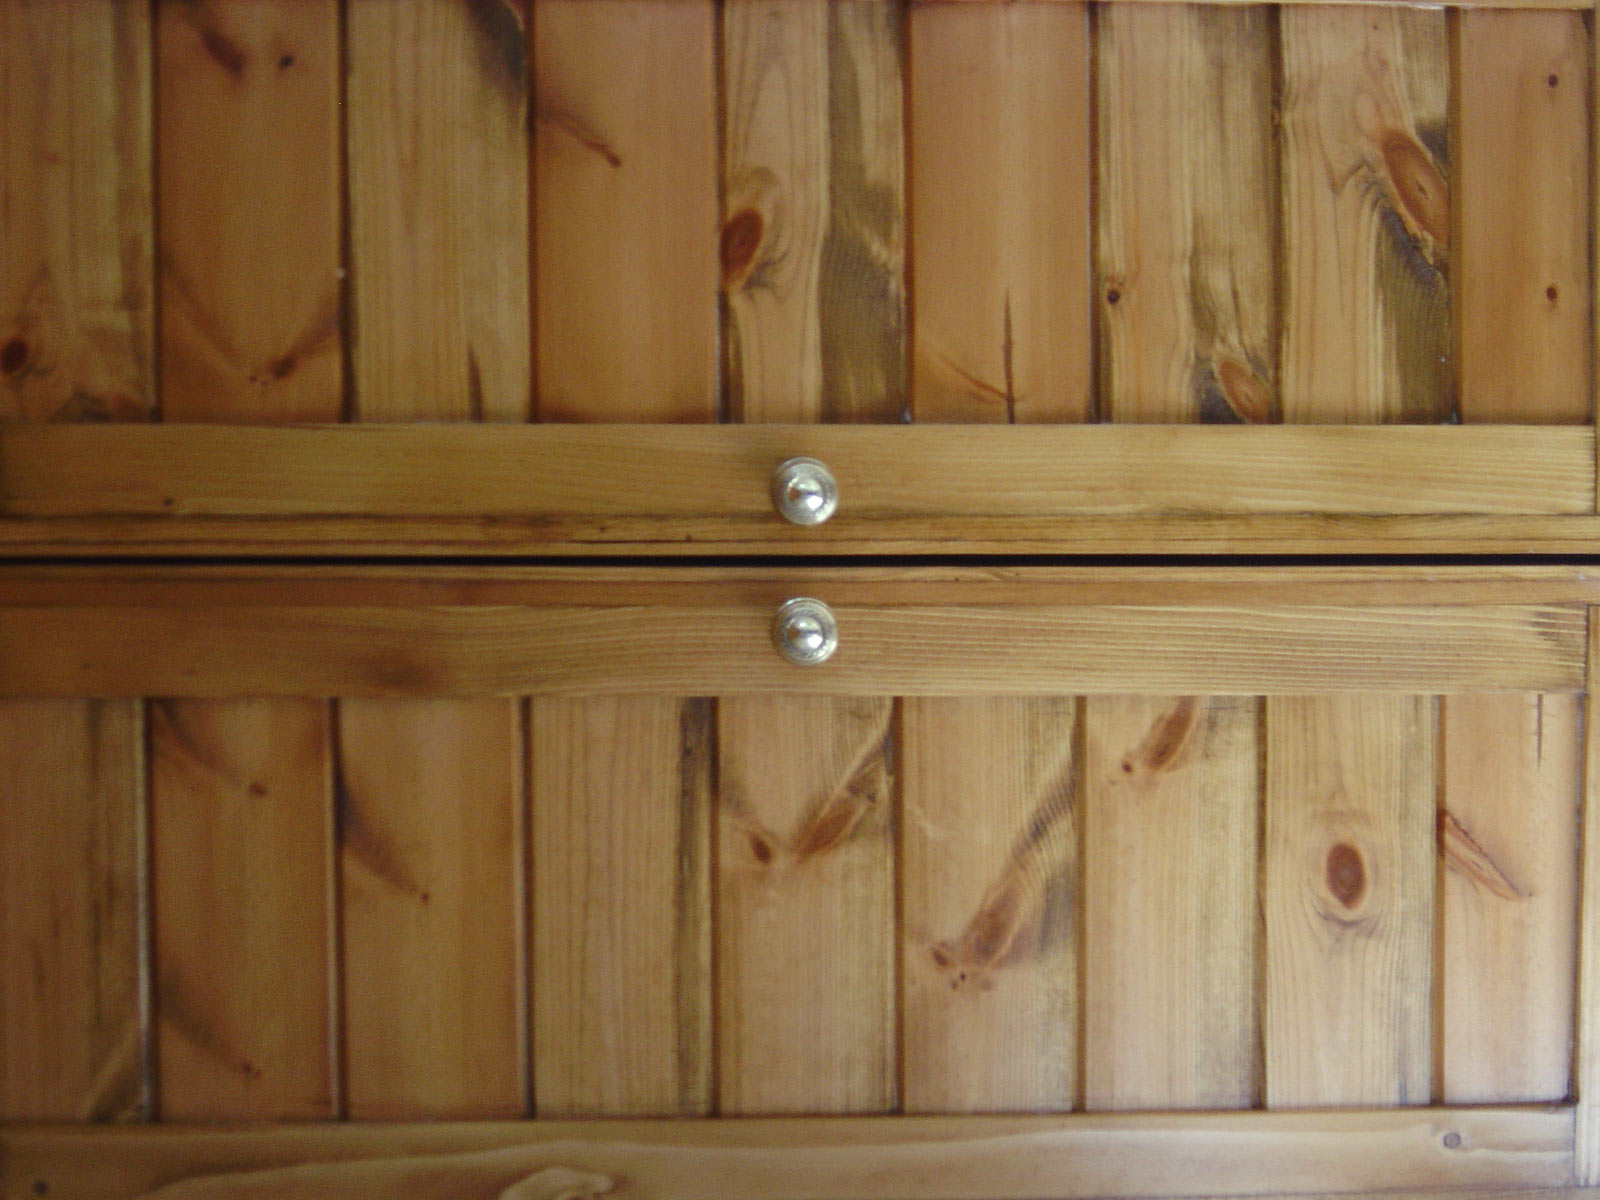 Wooden door photo